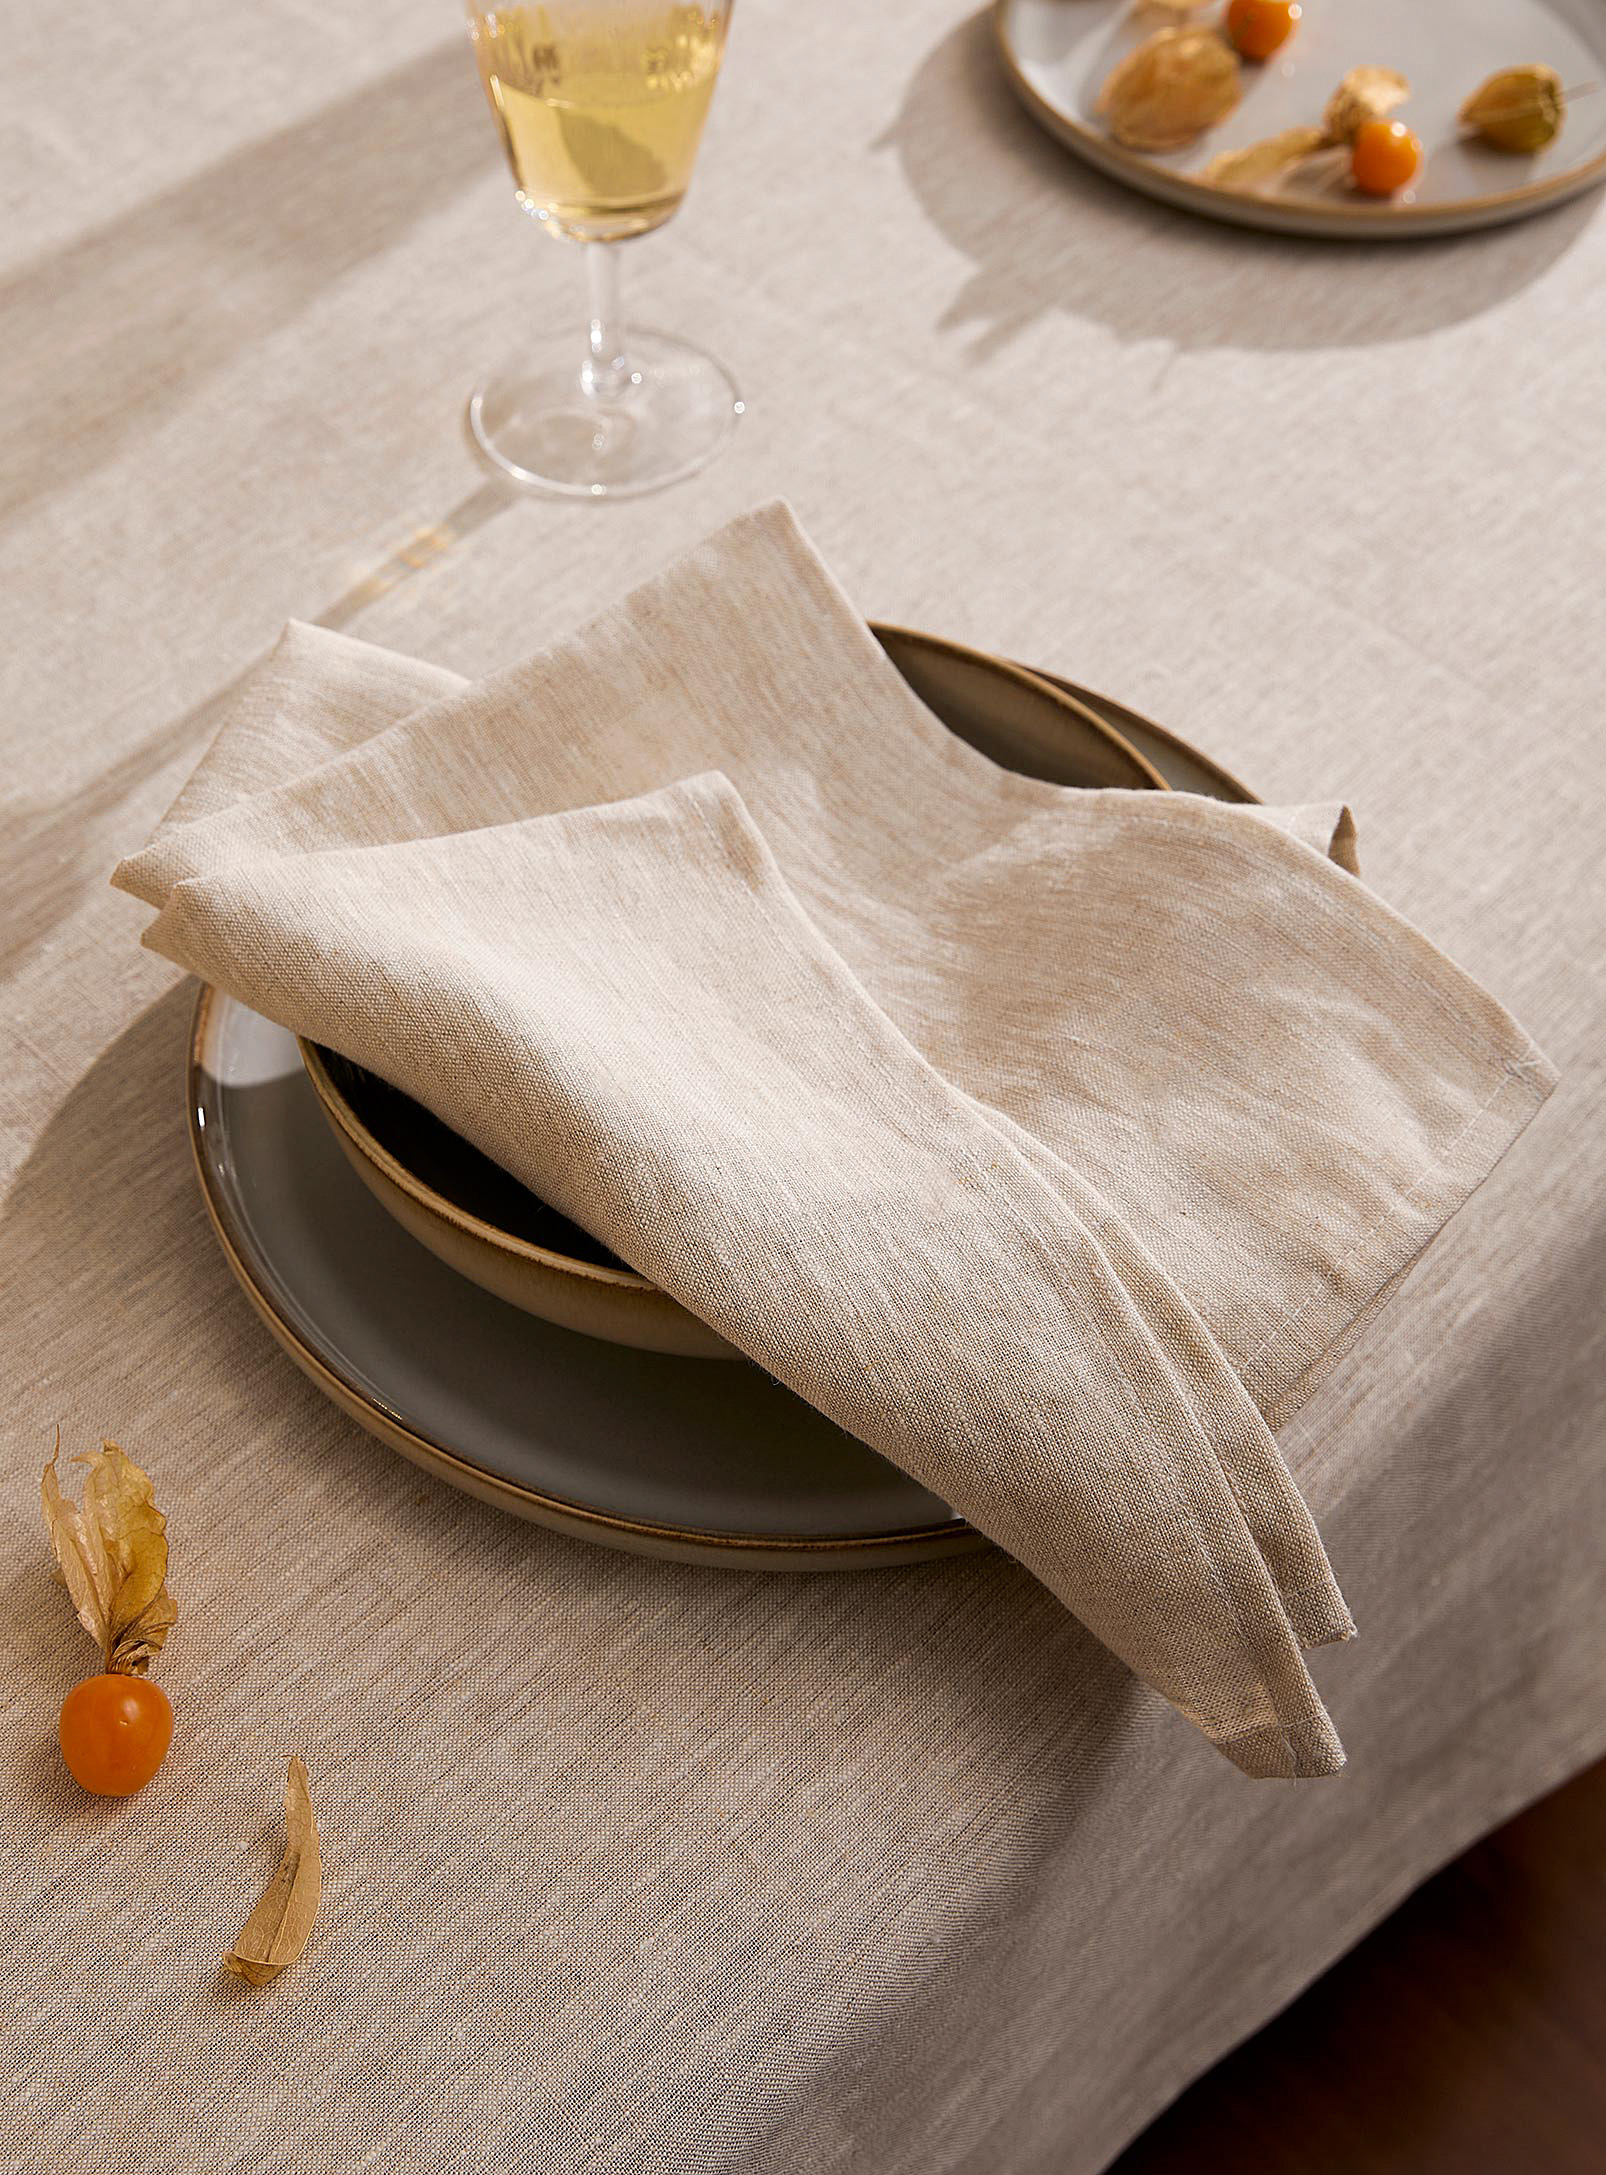 Simons Maison - La serviette de table pur lin naturel